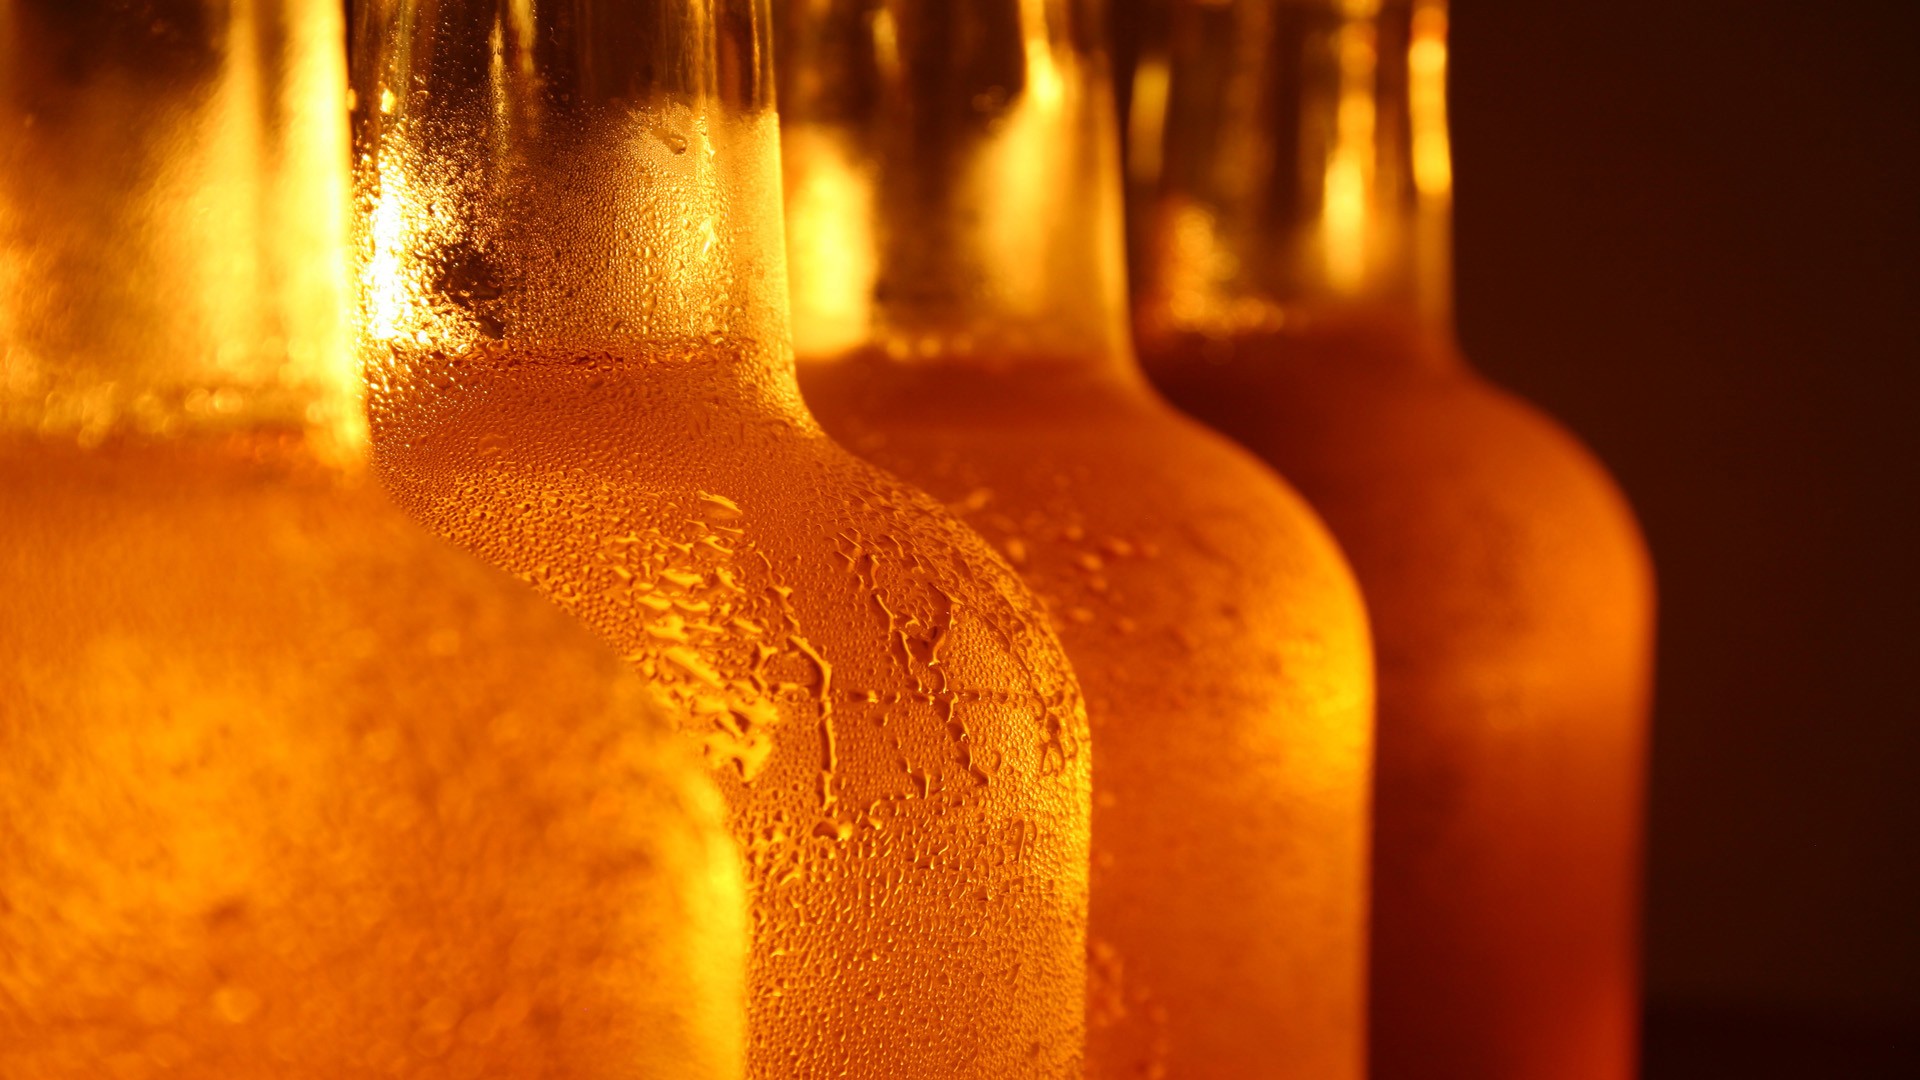 beer bottle wallpaper,bottle,glass bottle,yellow,drink,amber